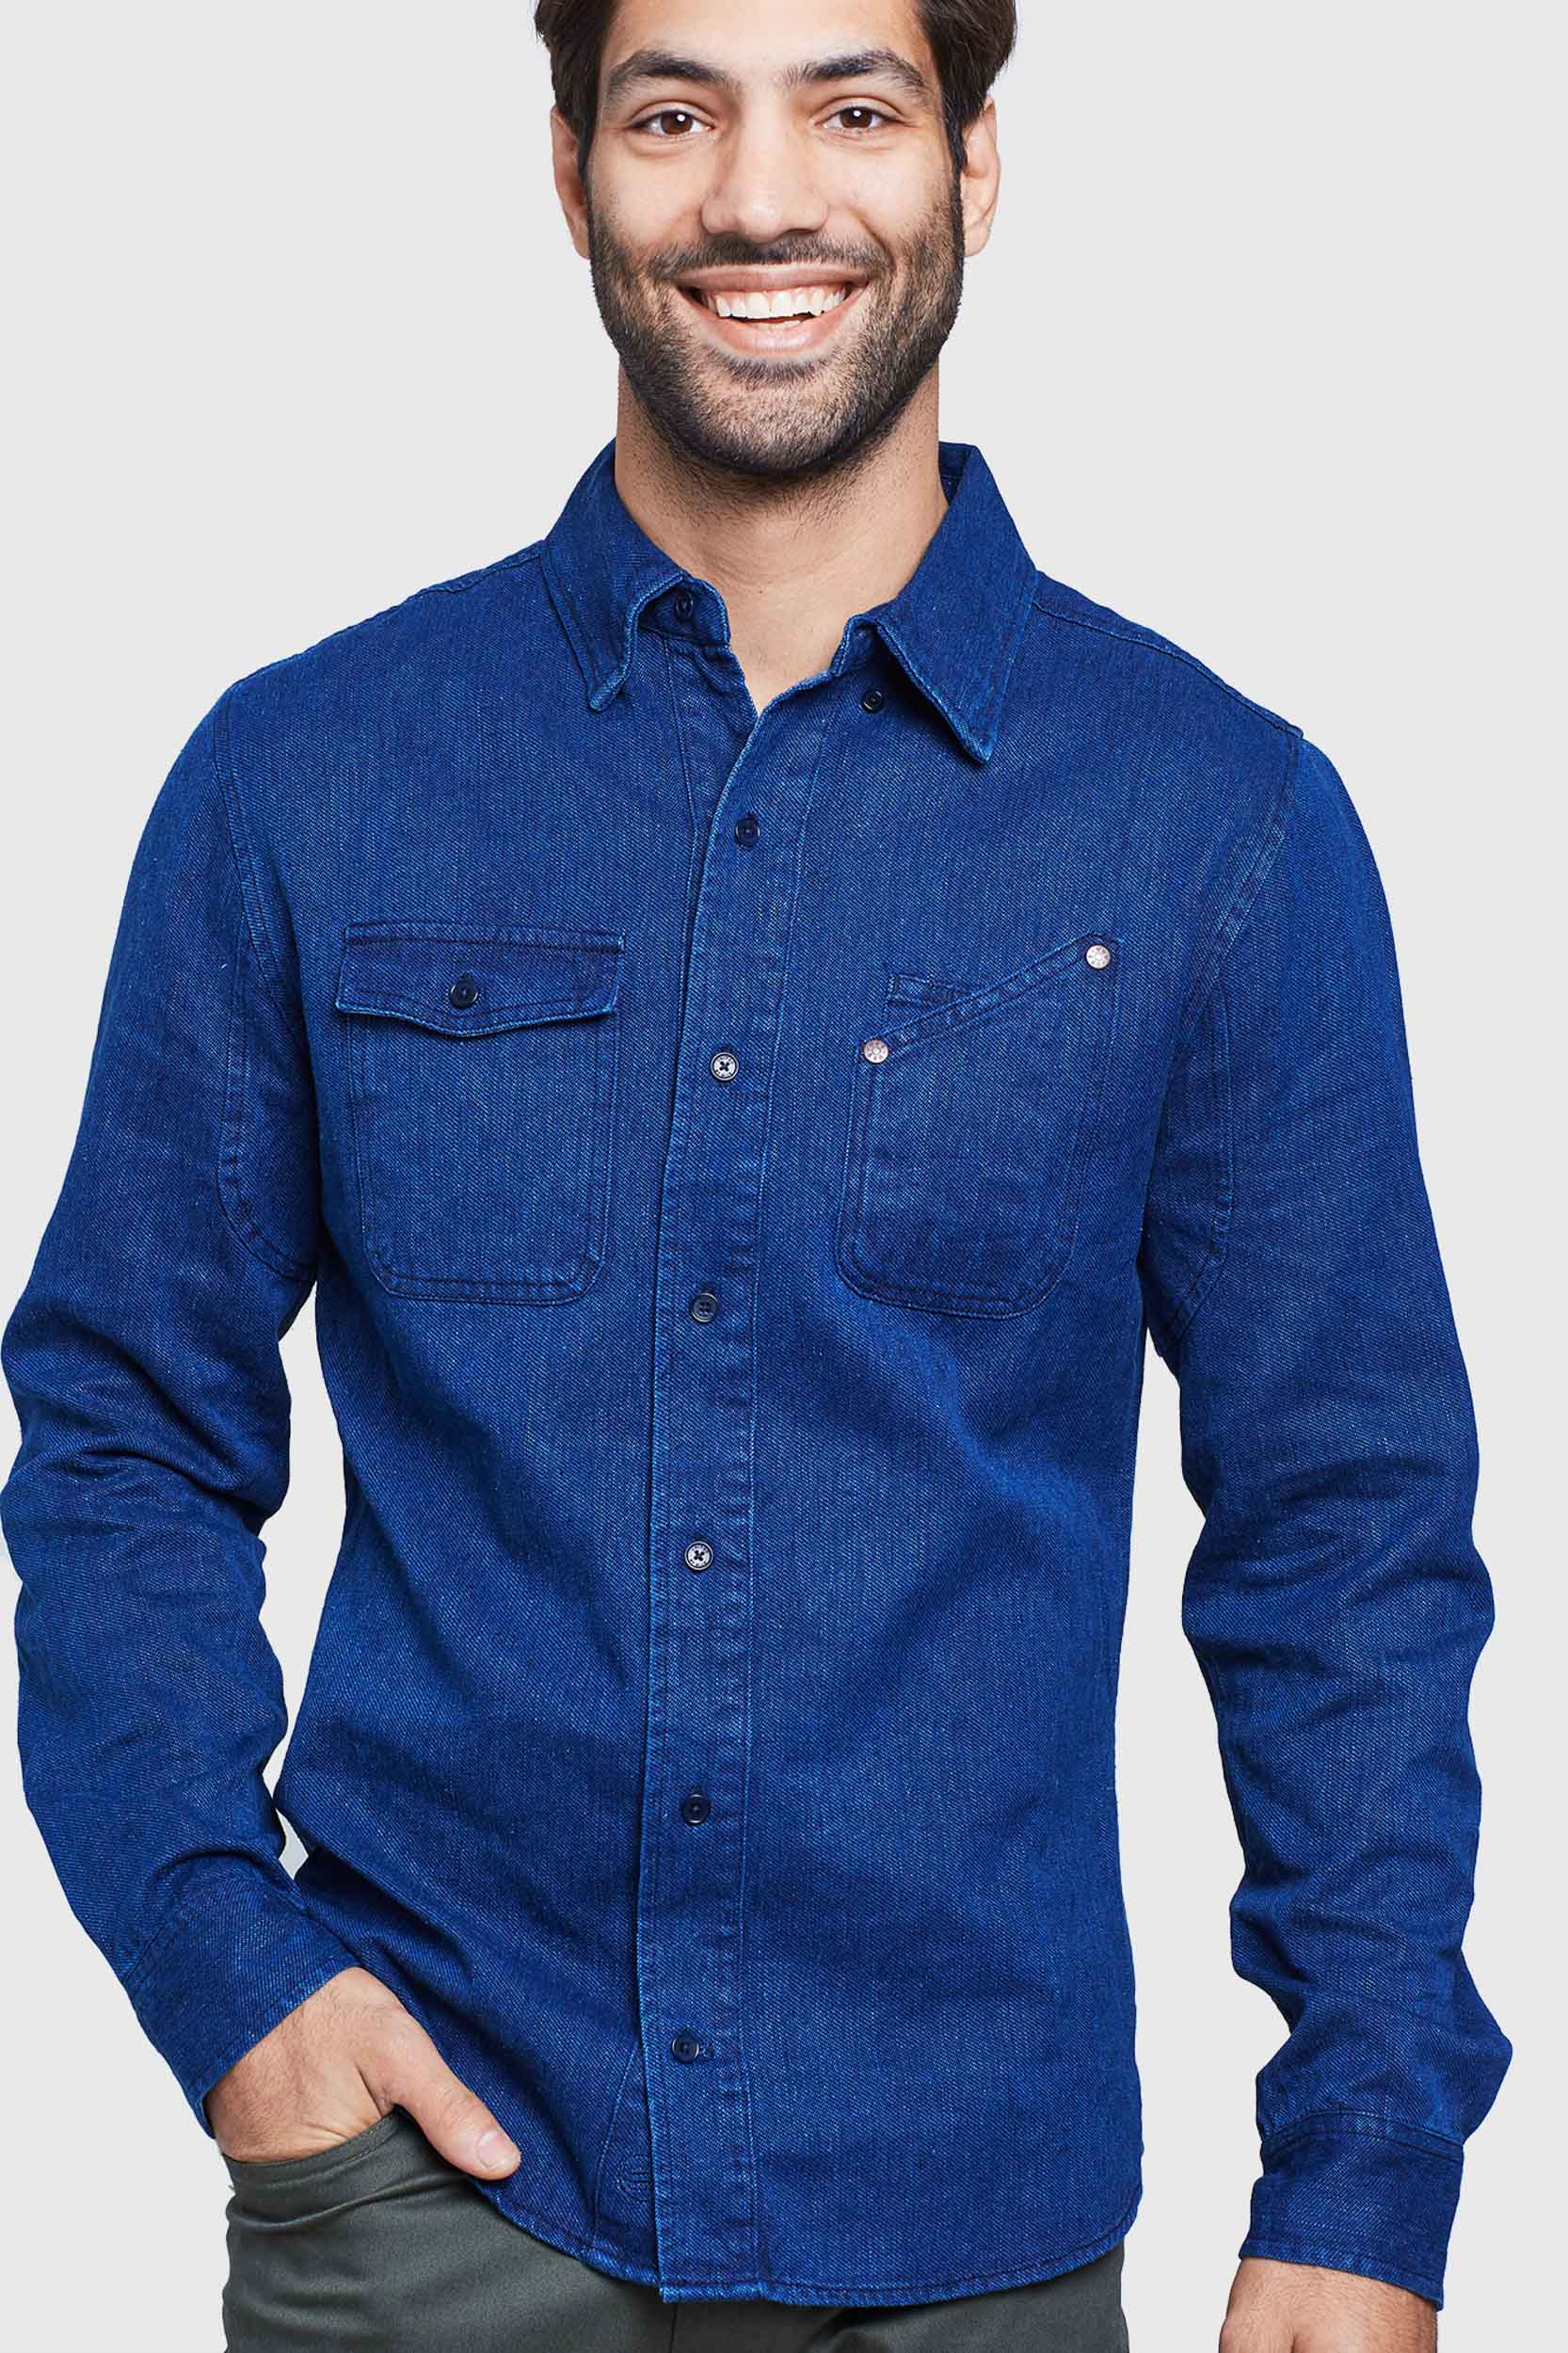 blue denim shirt